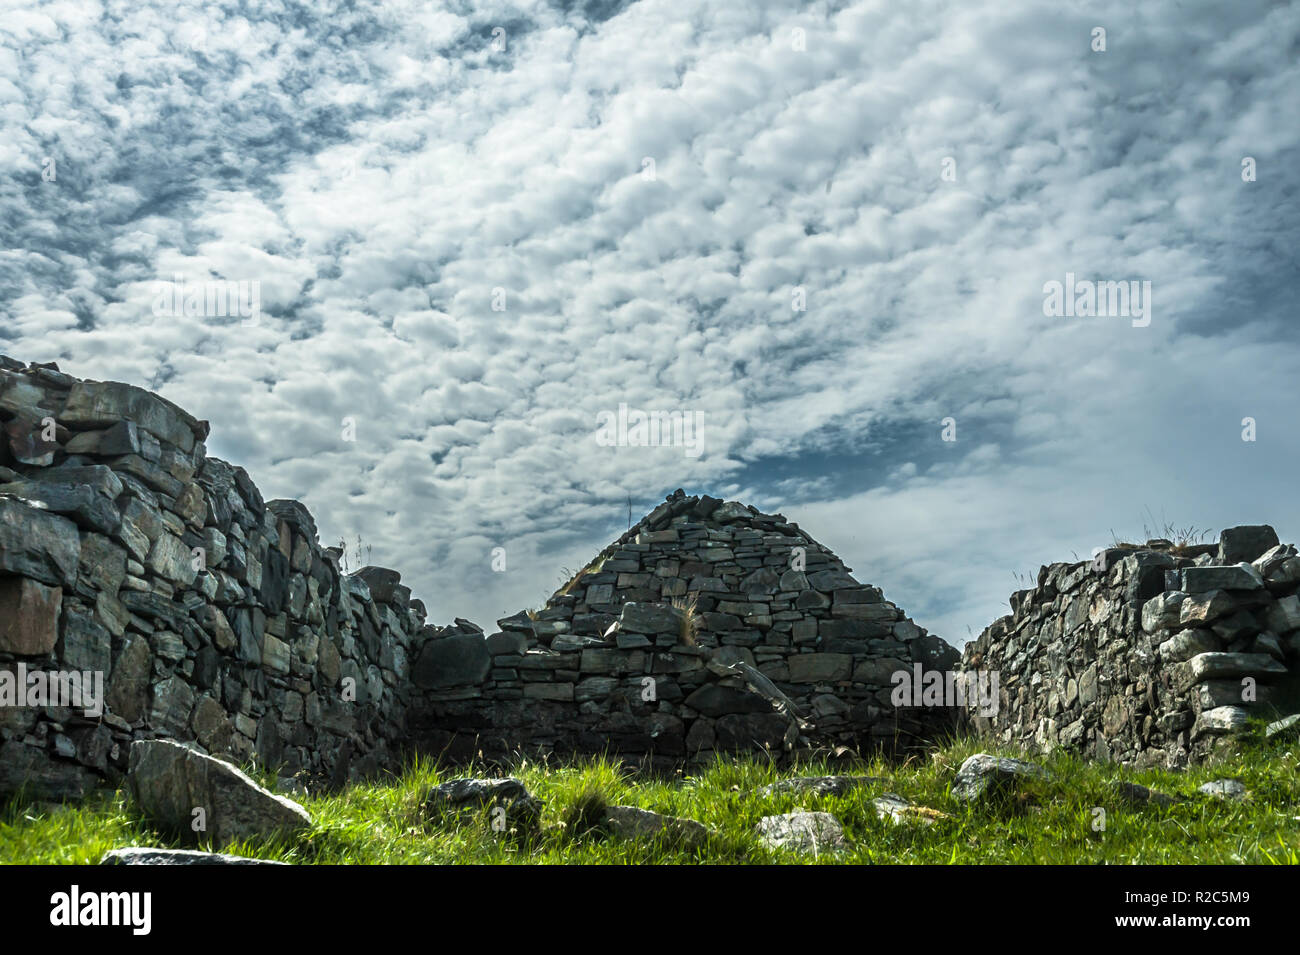 Abbandonata, storico stalattite casa di Lewisian gneiss rock in esterno isole delle Ebridi in Scozia con vista di alta nuvole e cielo in background Foto Stock